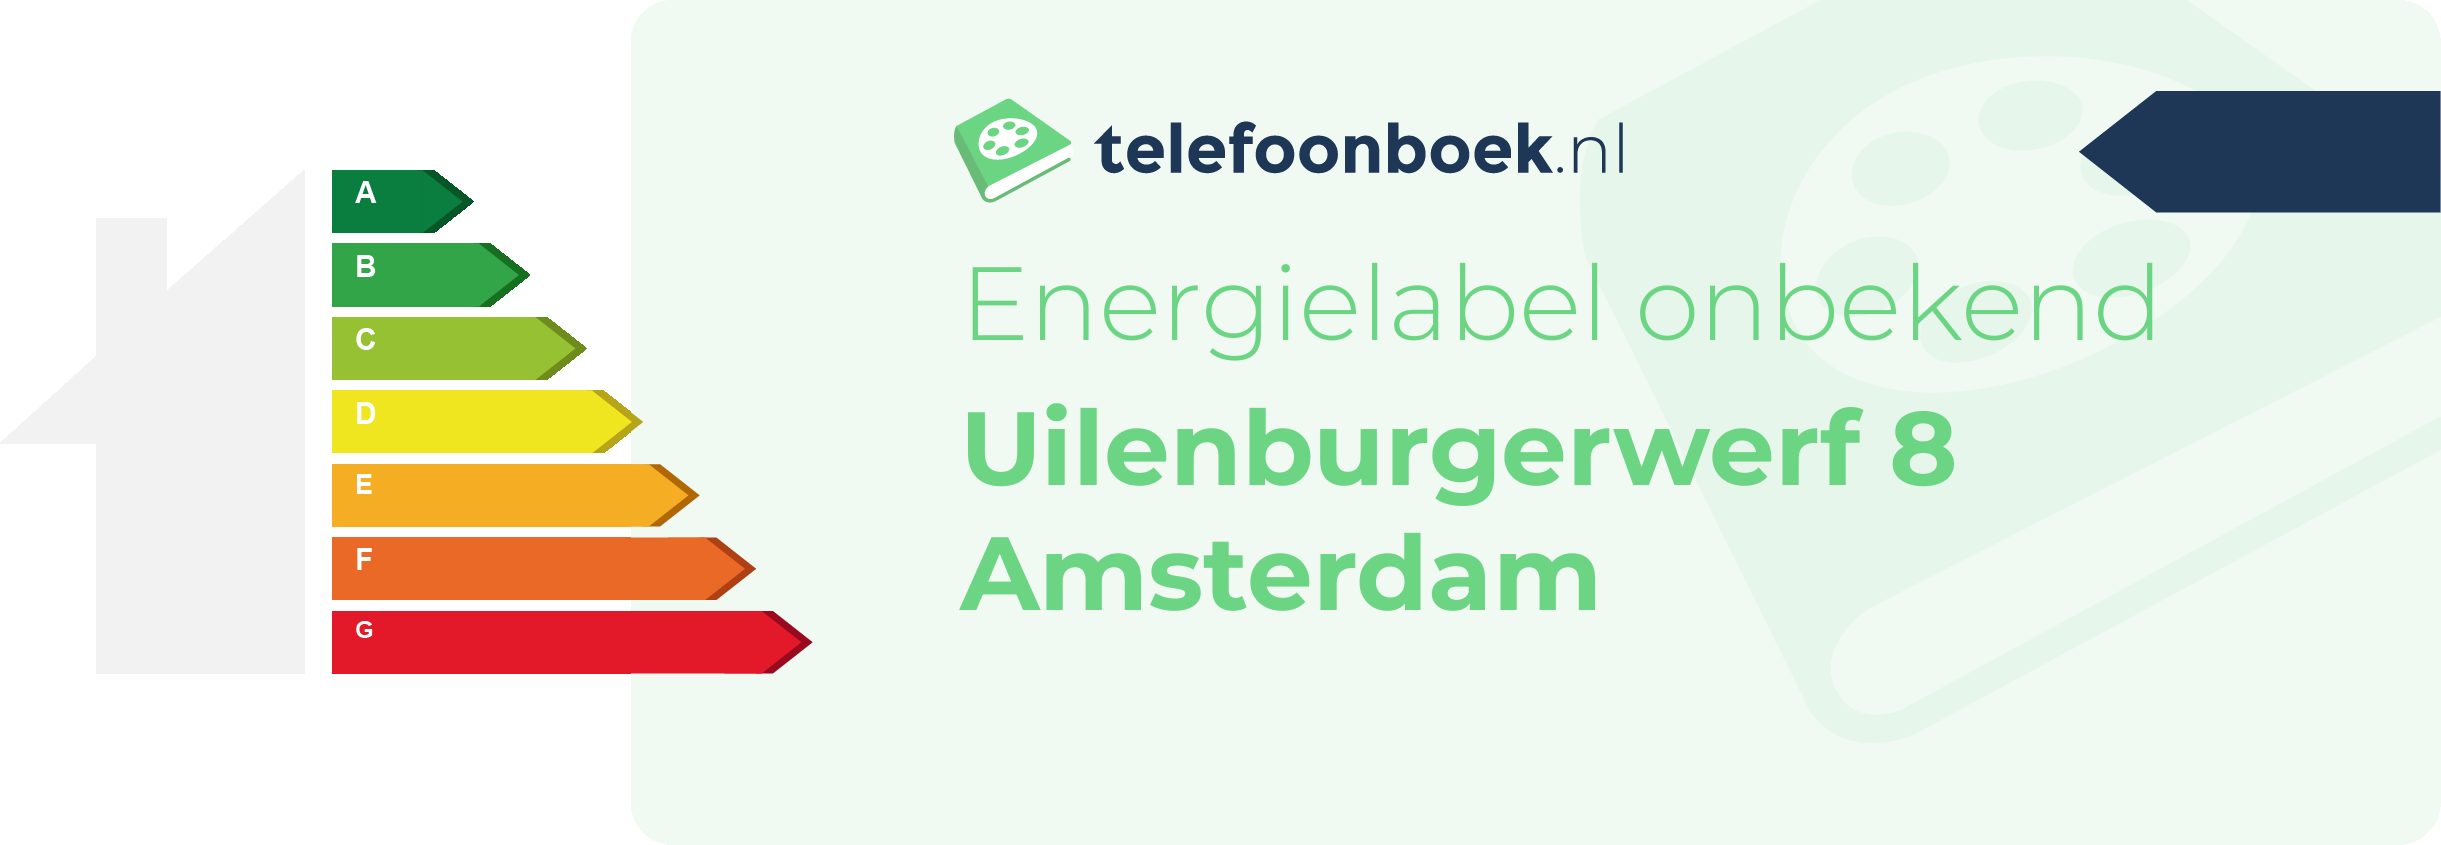 Energielabel Uilenburgerwerf 8 Amsterdam